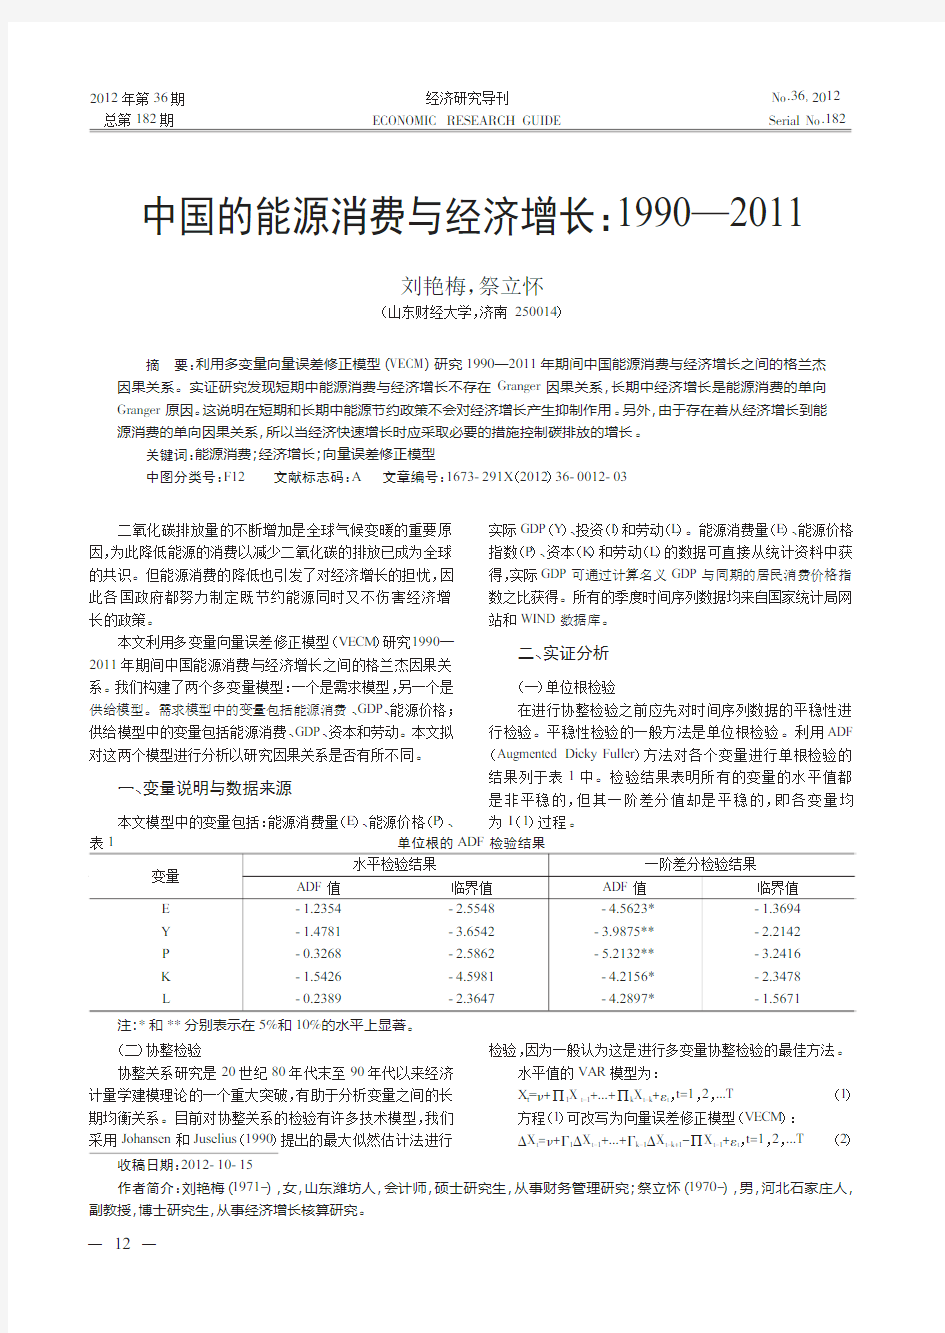 中国的能源消费与经济增长1990—2011